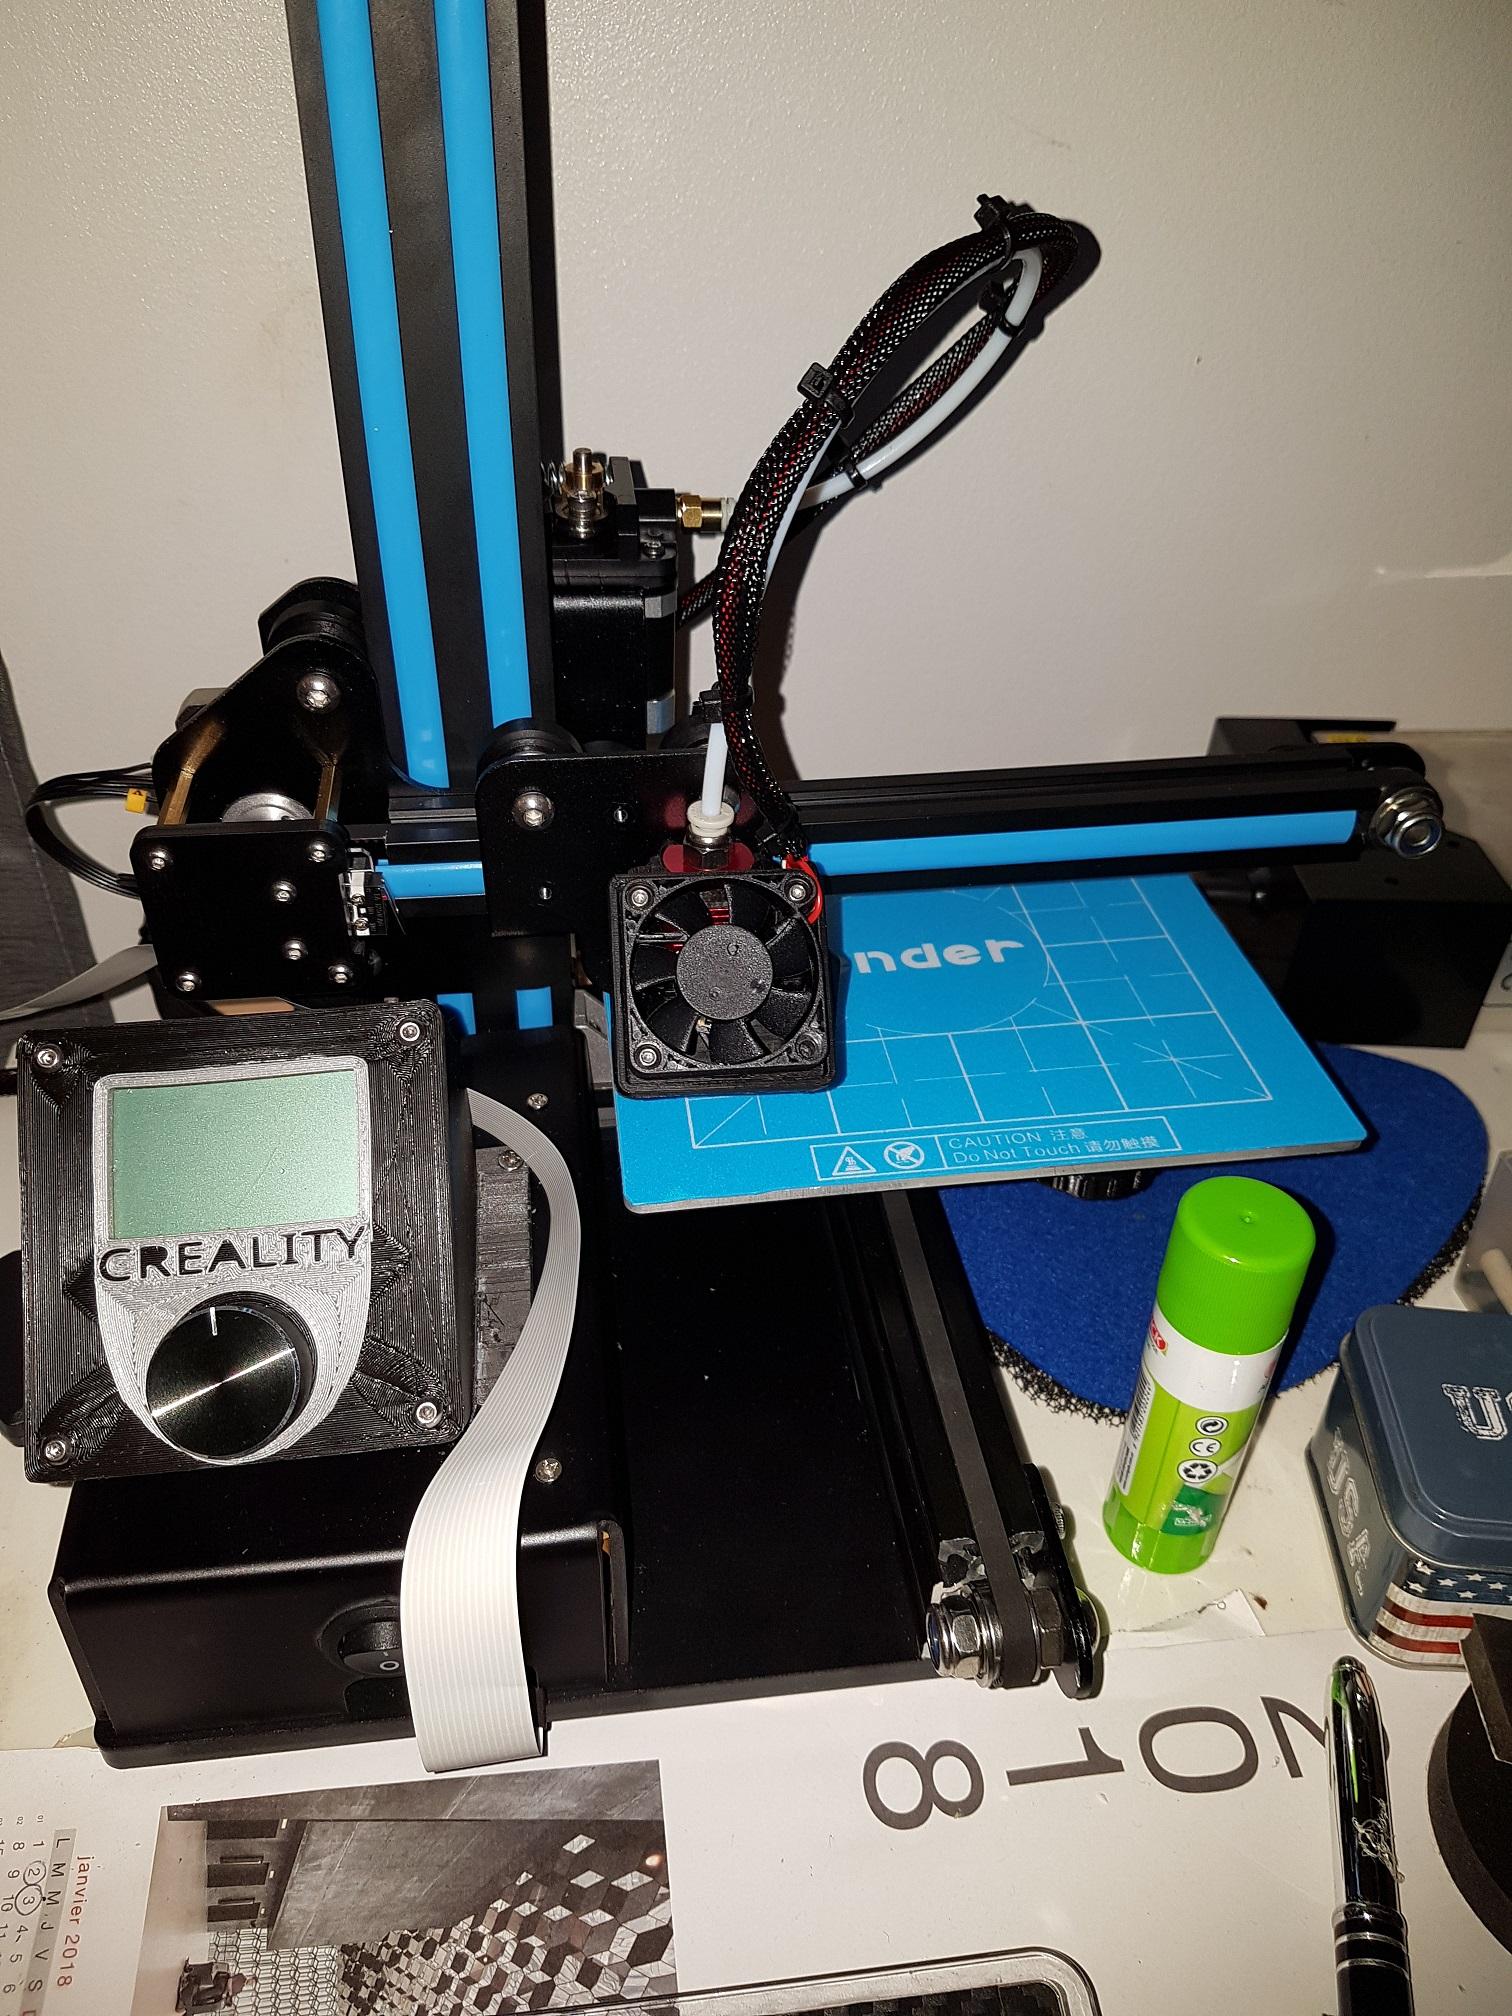 Caisson] Le Caisson Creality CR-10 en détail - Creality - Forum pour les  imprimantes 3D et l'impression 3D